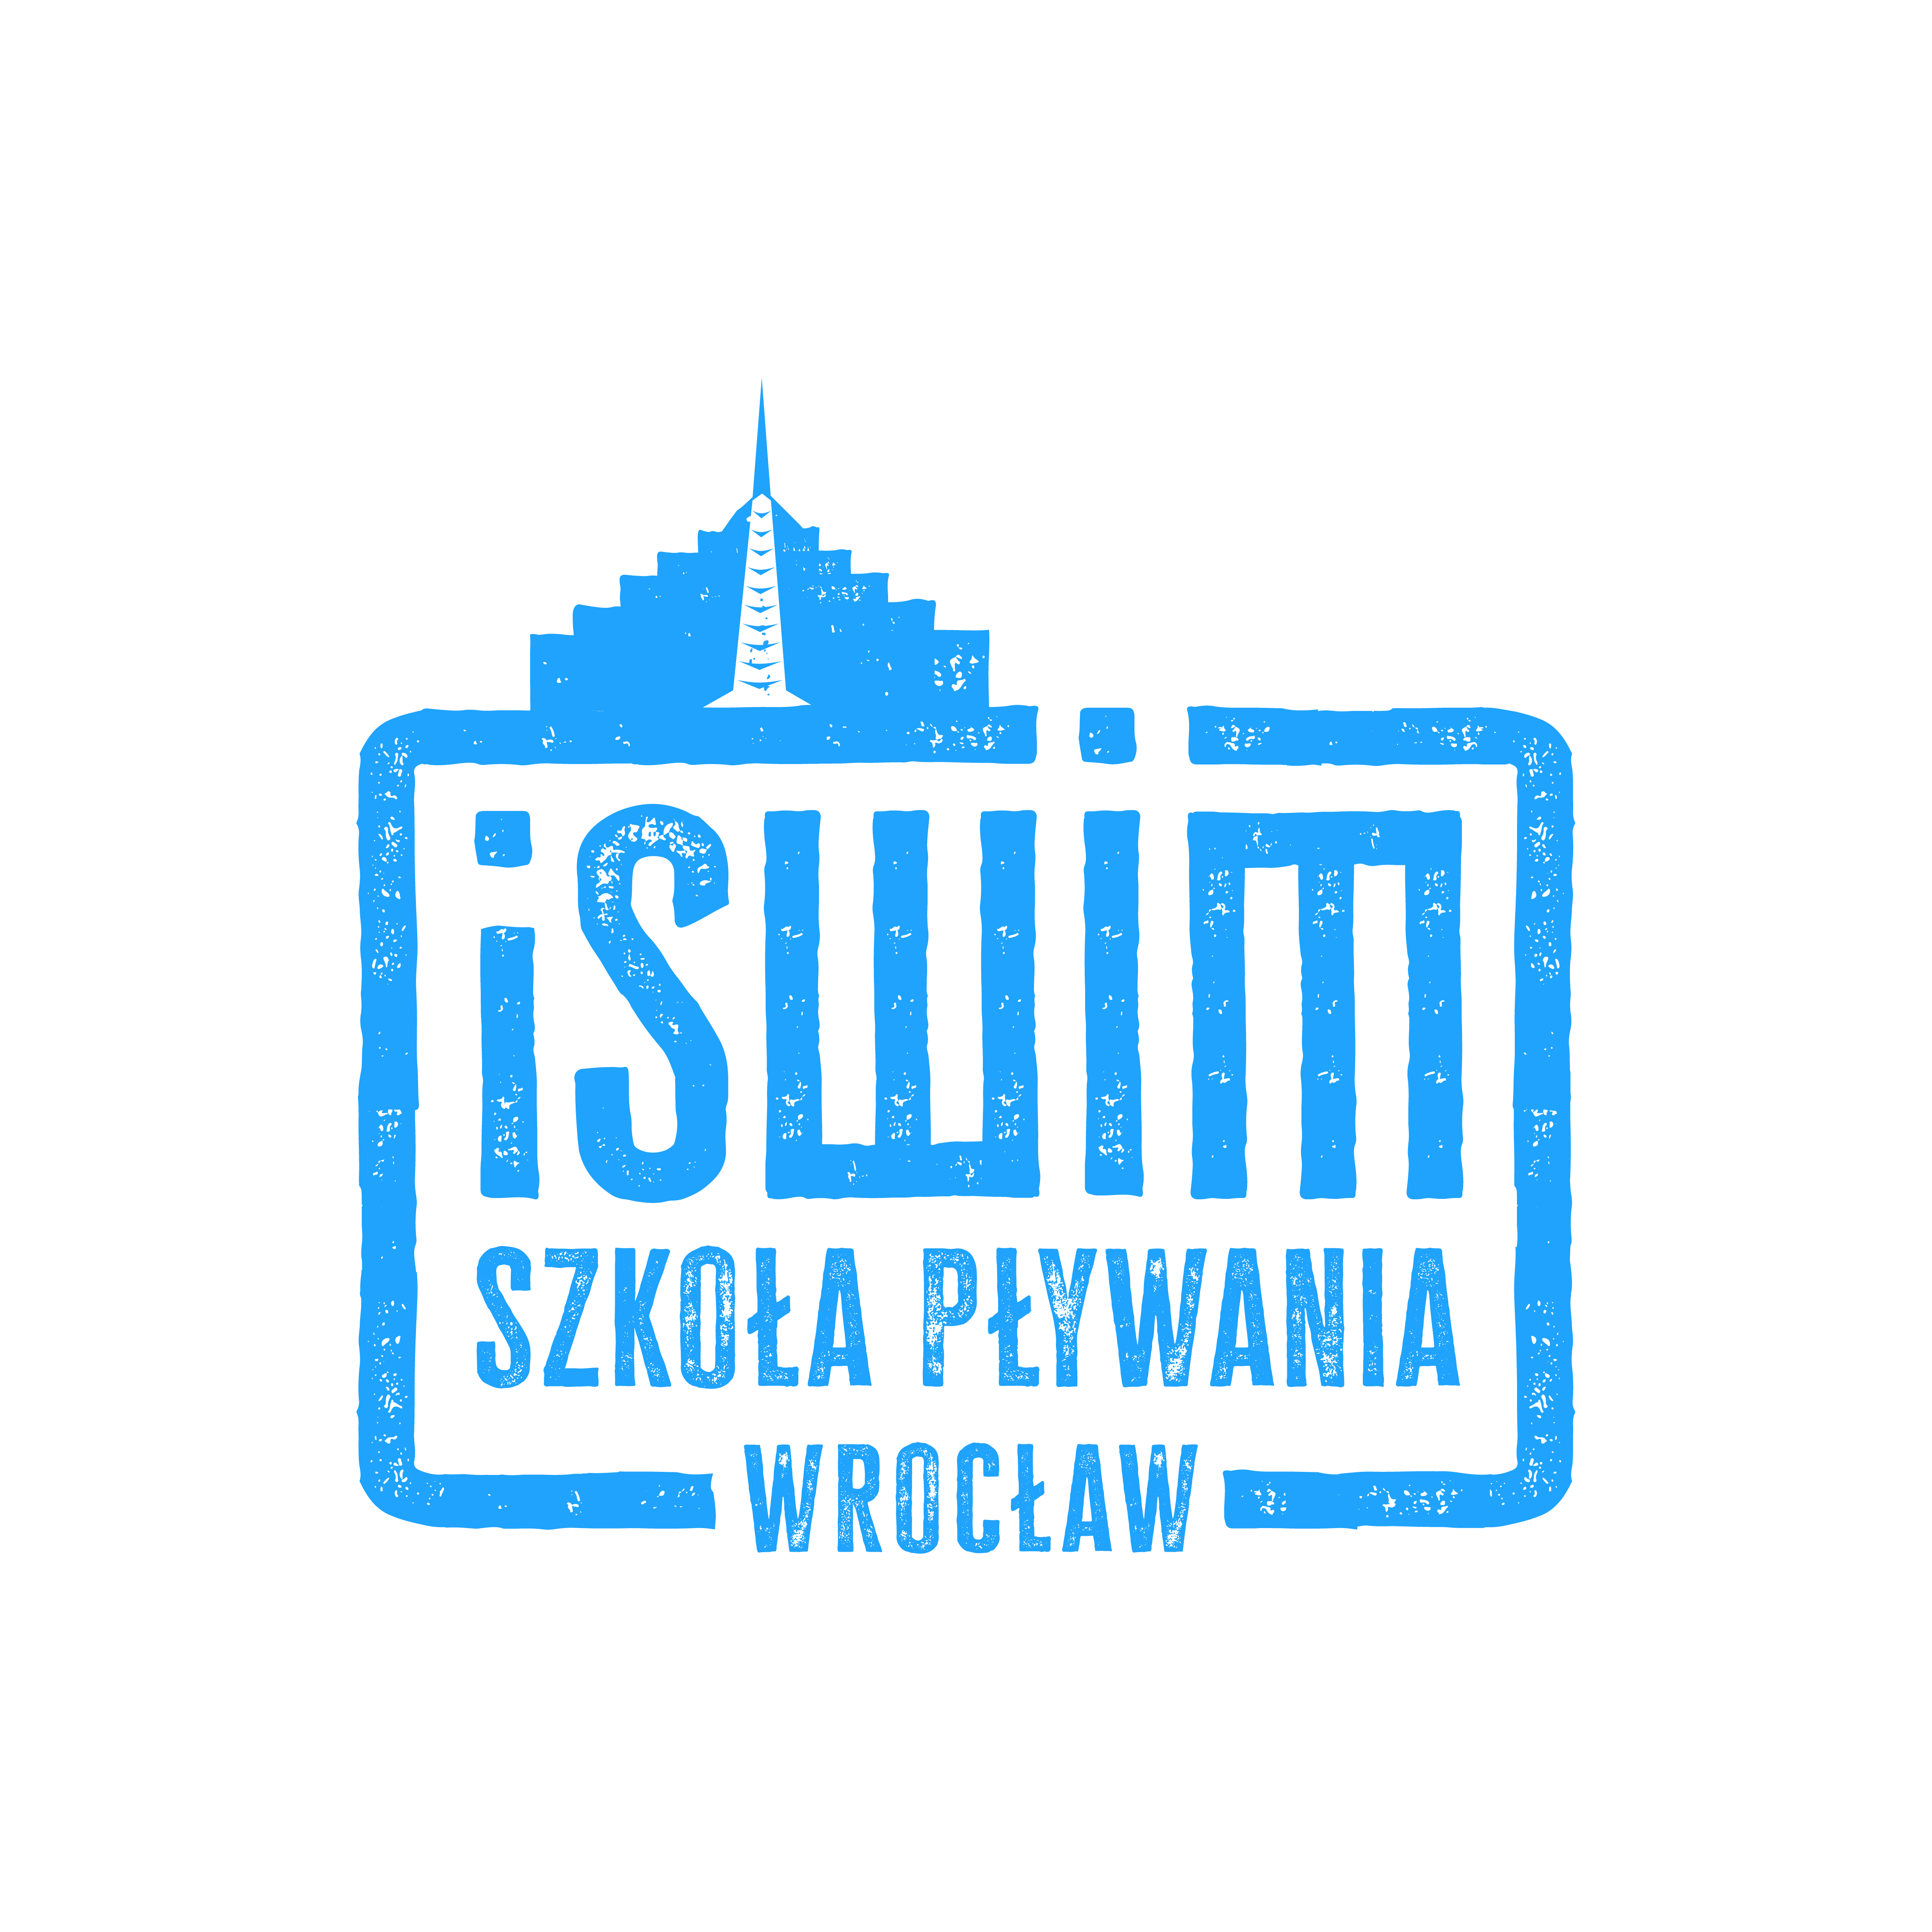 Szkoła Pływania iSwim Wrocław, Nauka pływania dzieci i młodzieży, obozy sportowe, indywidualne treningi pływackie